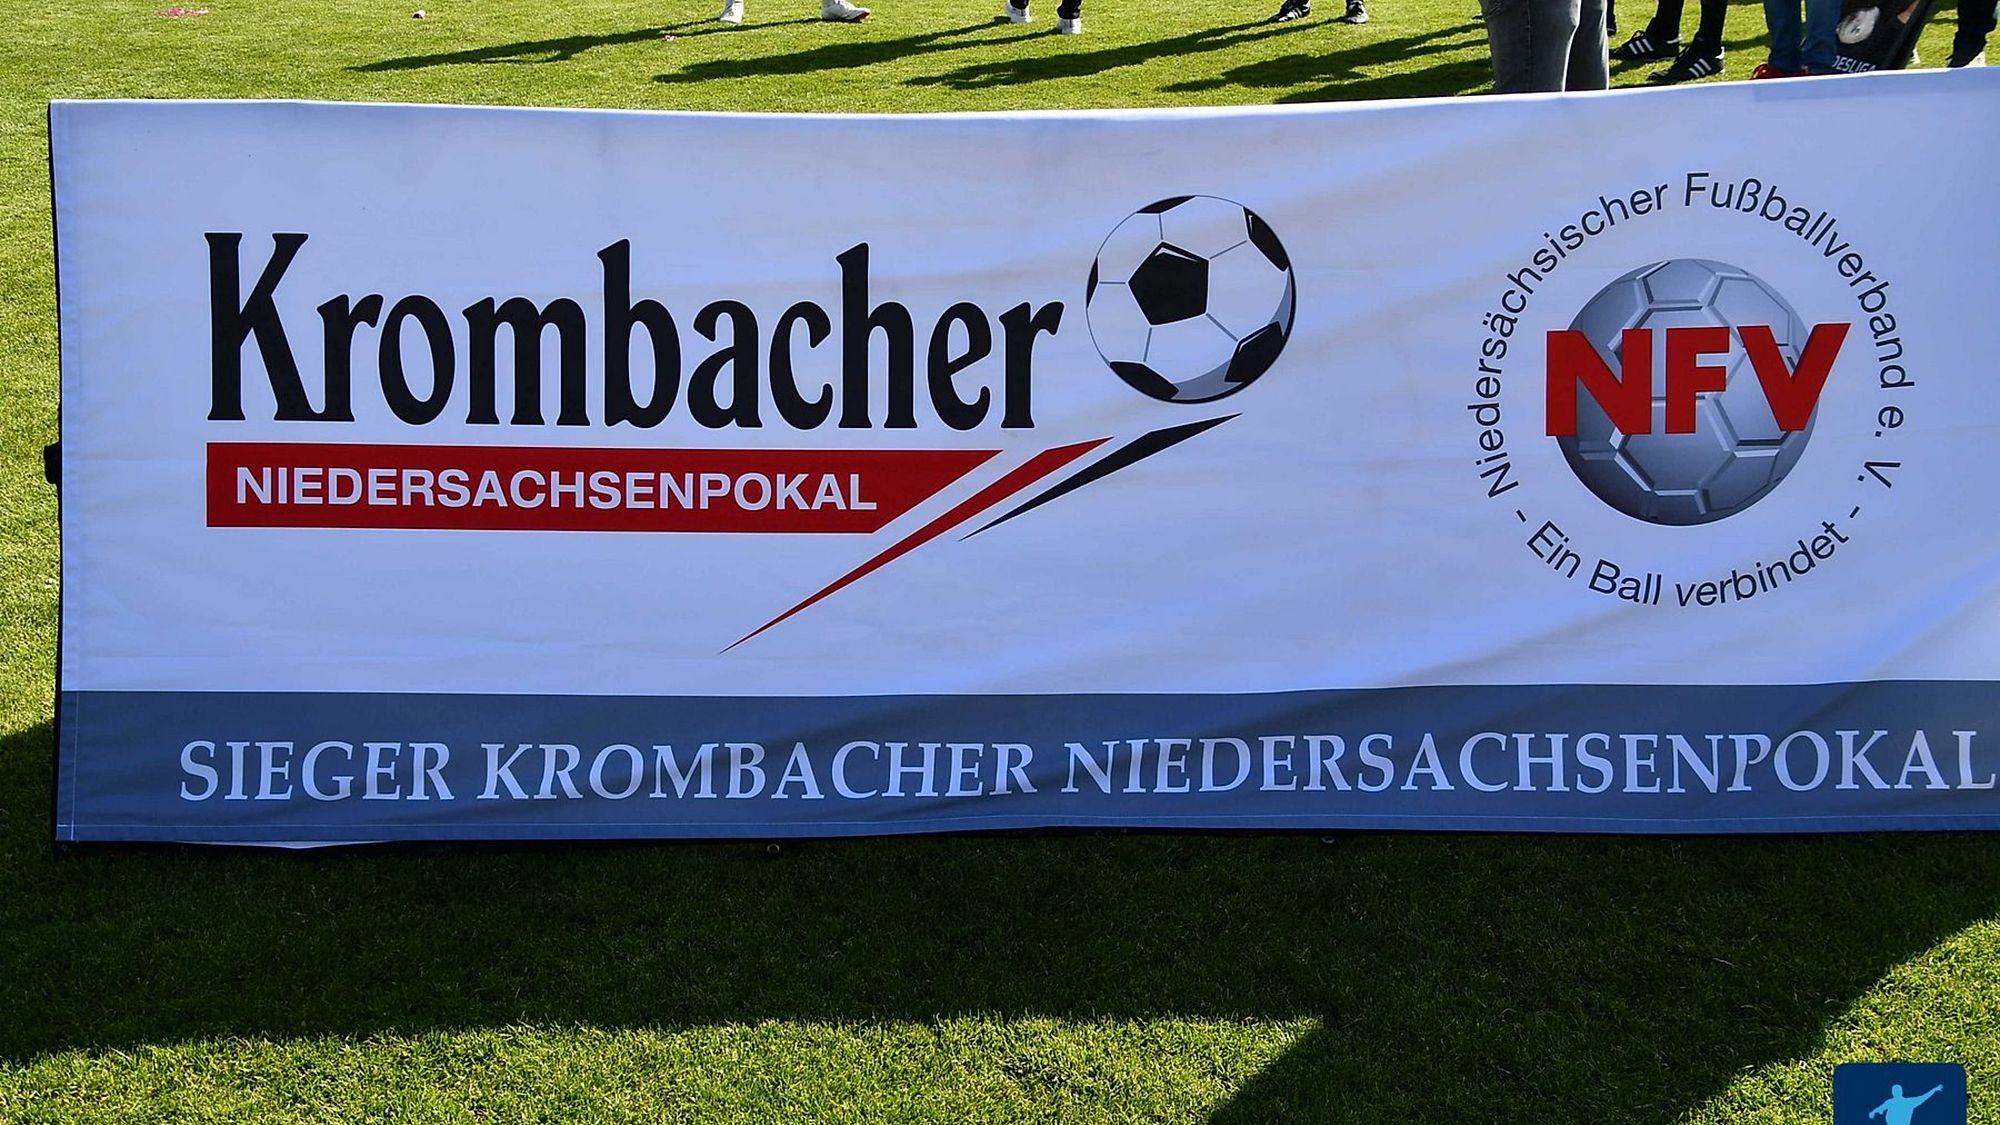 Das sind die Partien des Krombacher Niedersachsenpokal